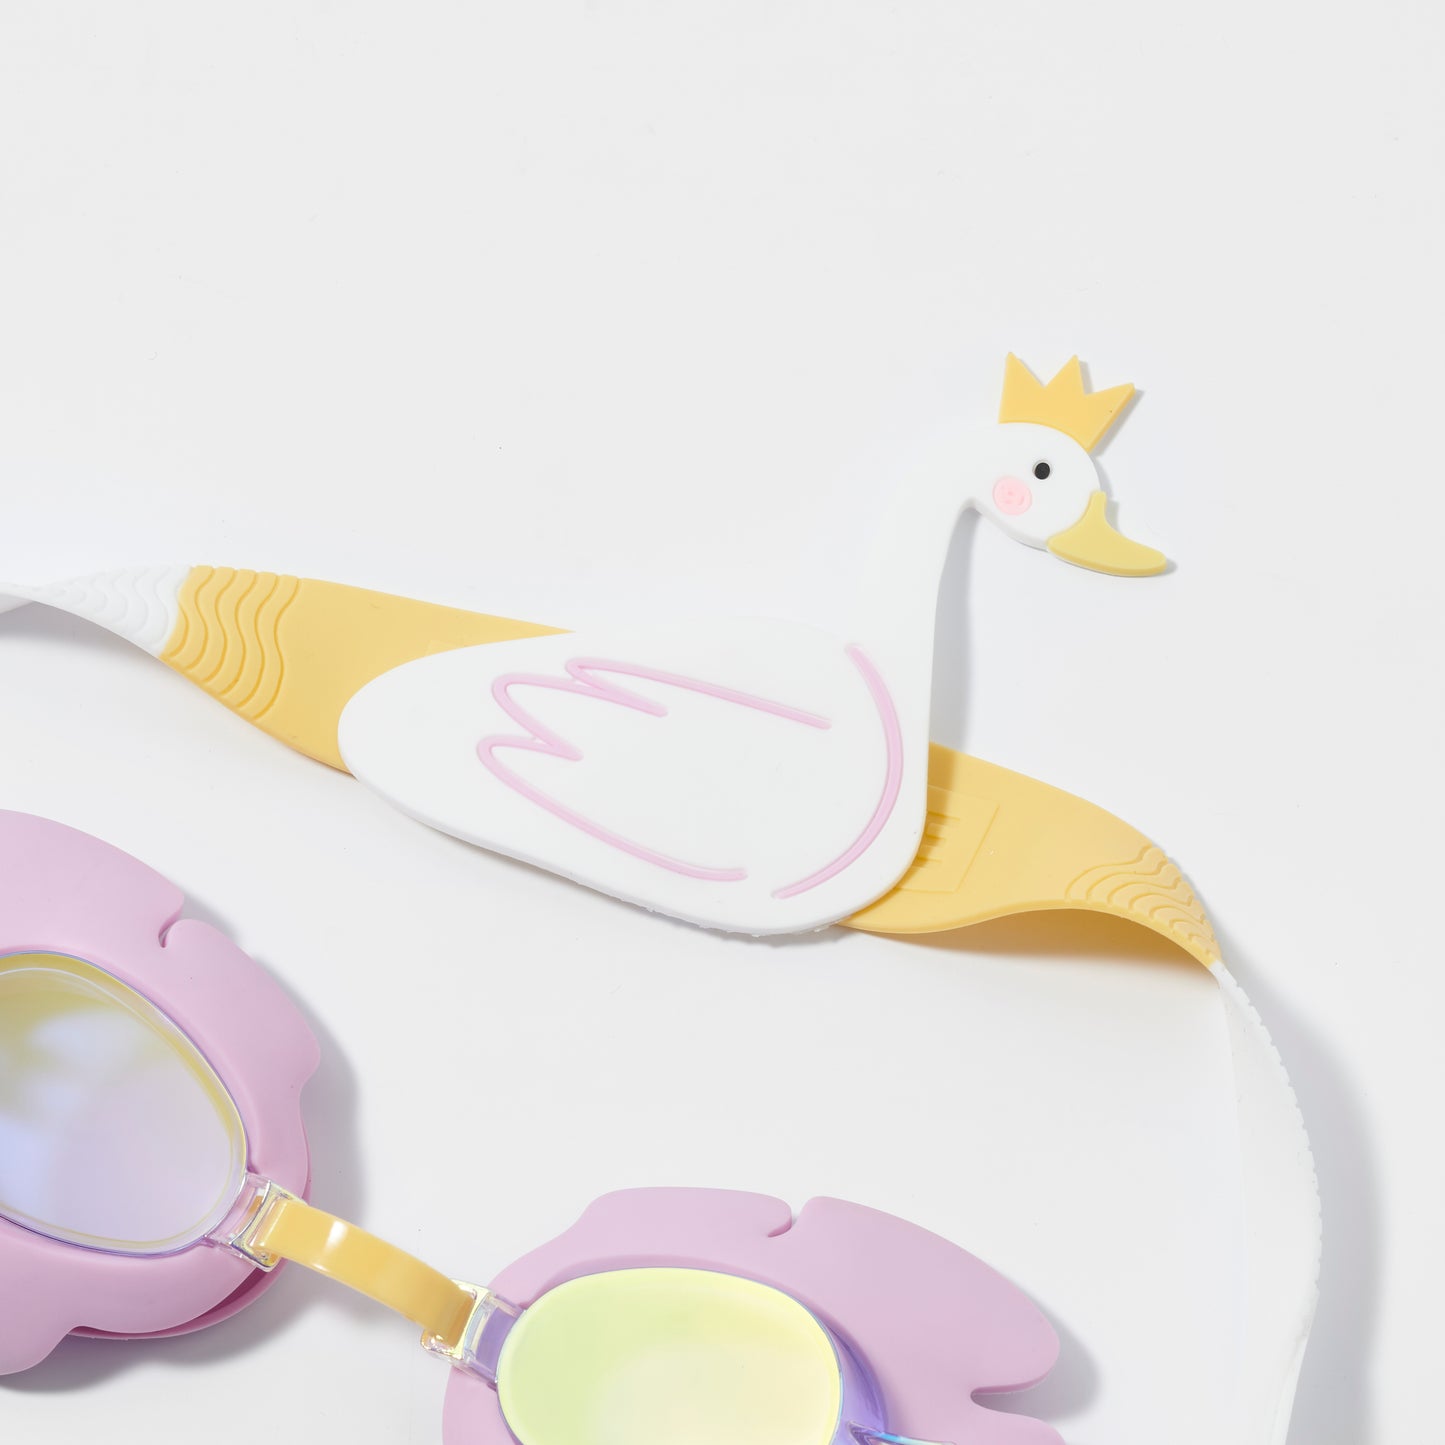 Princess Swan Kids Swim Goggles